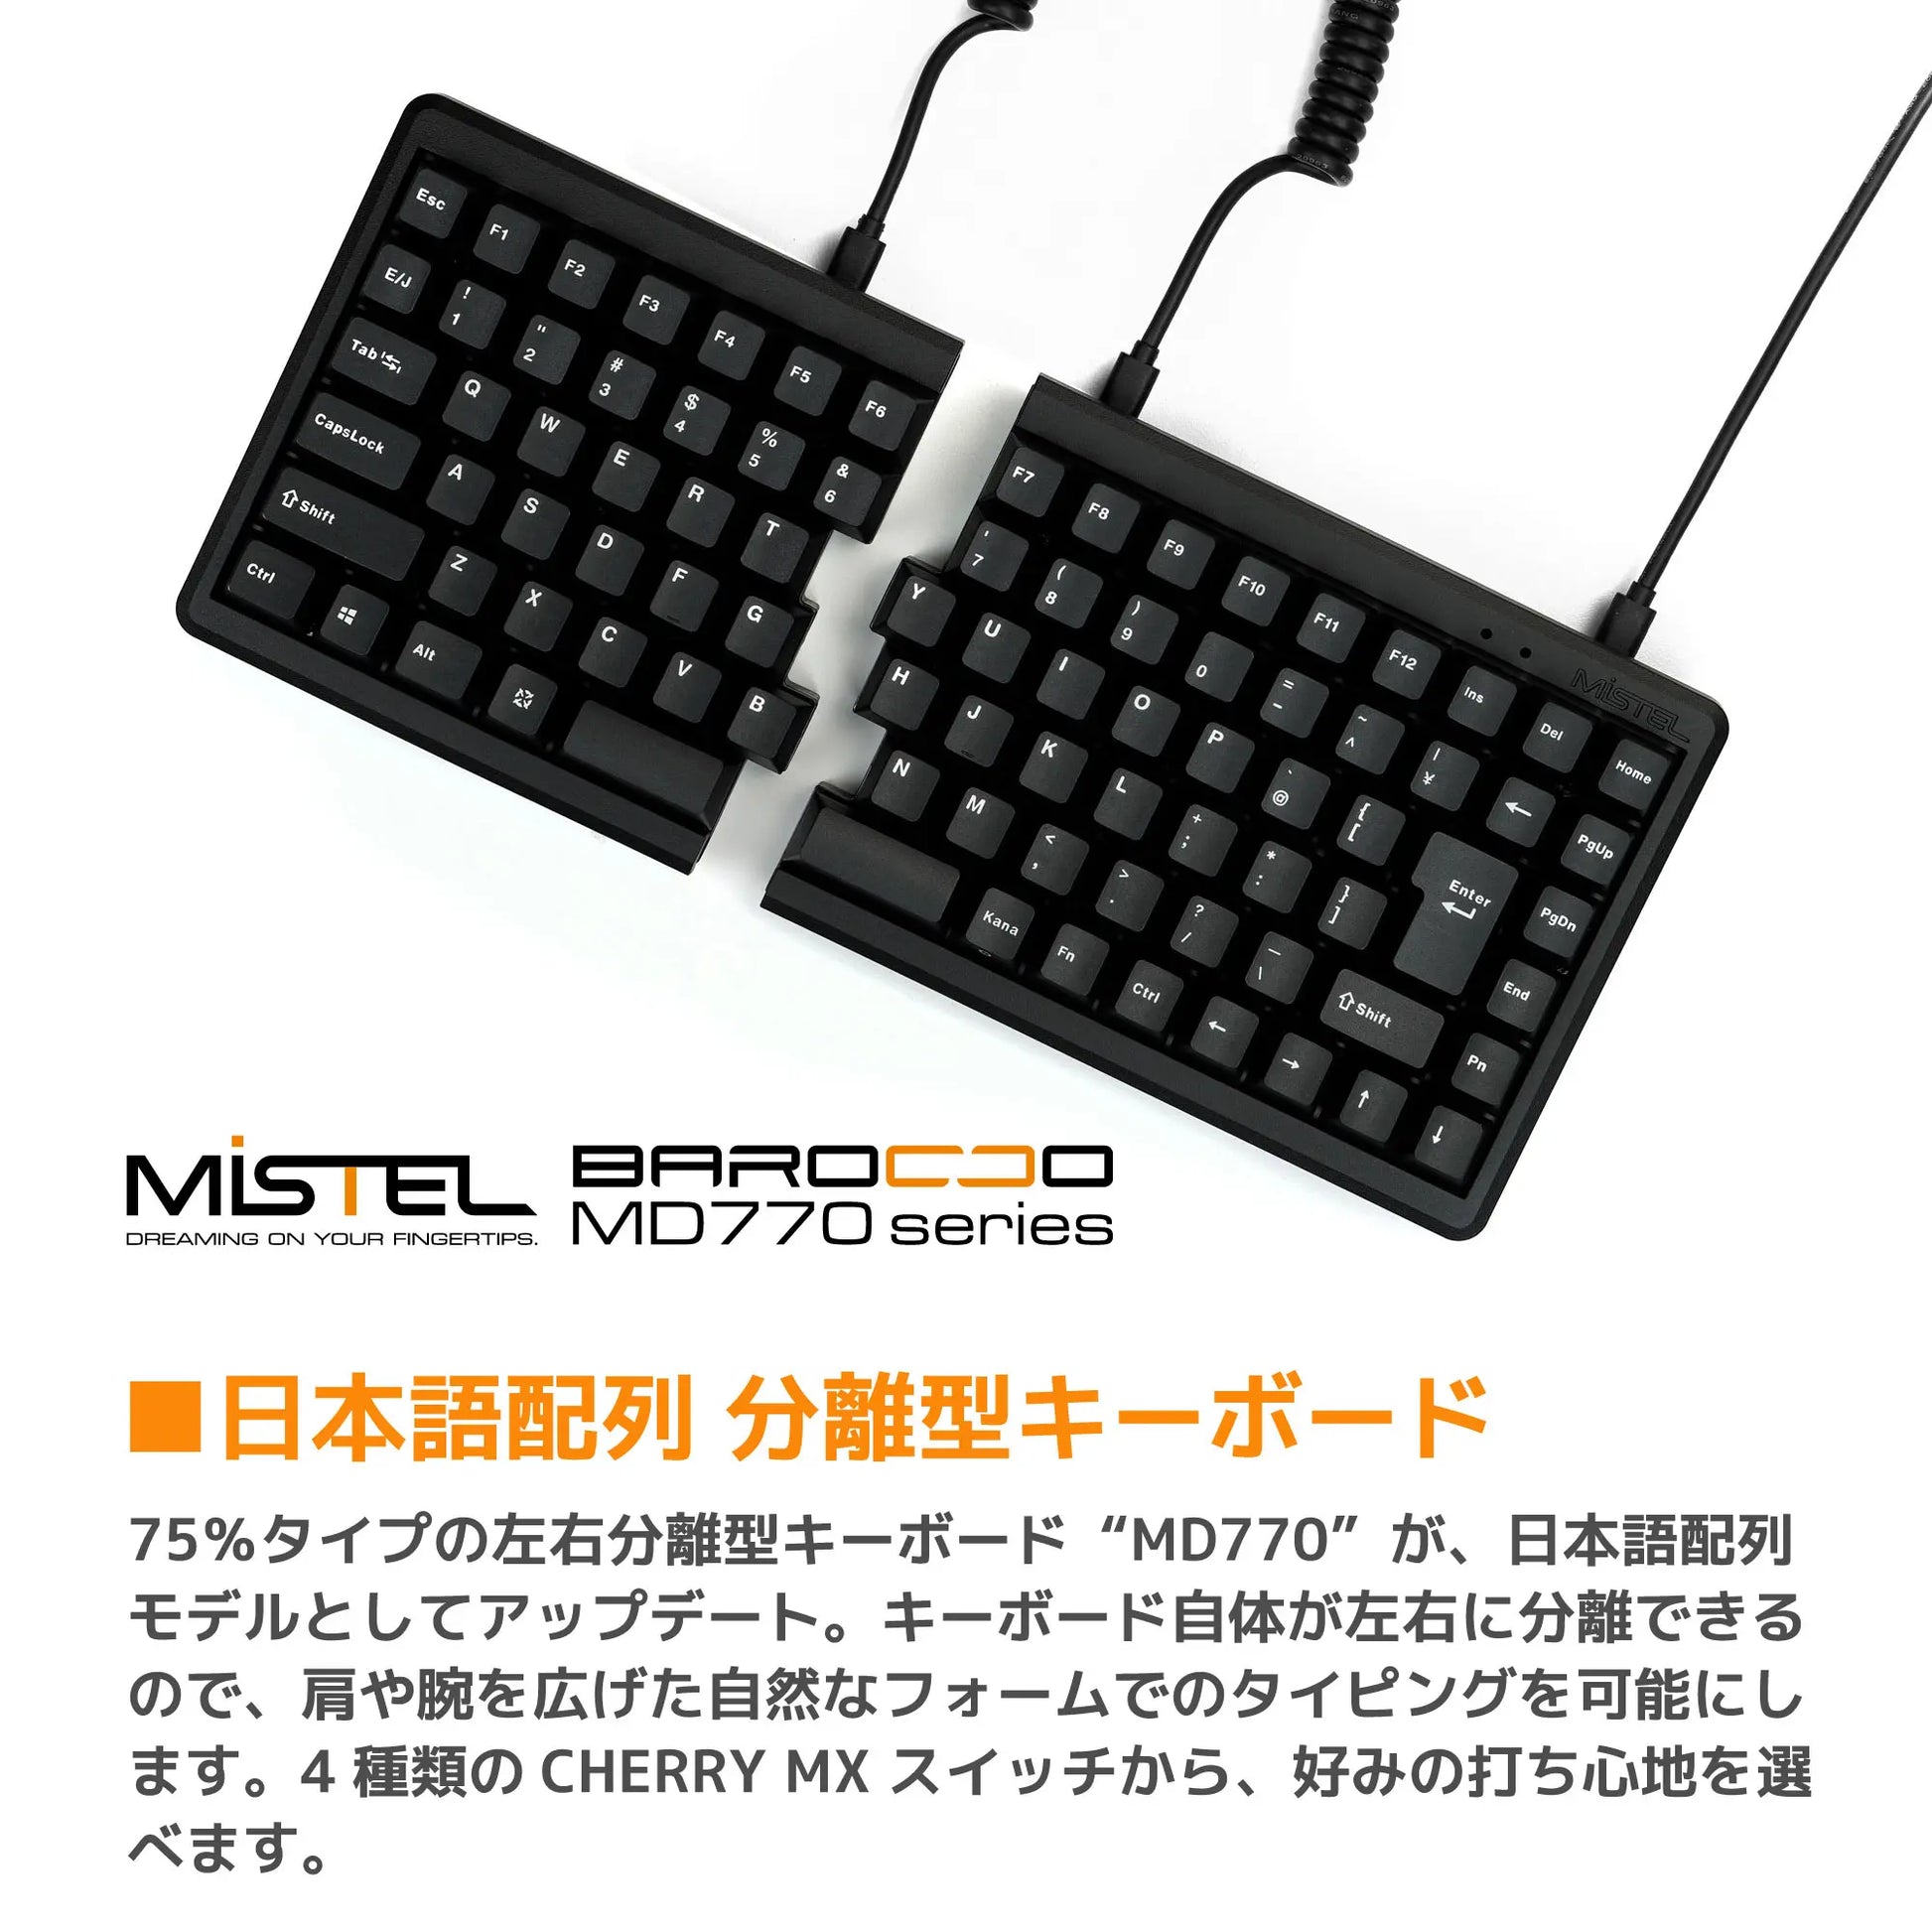 Mistel BAROCCO MD770 RGB JP メカニカル キーボード - PC周辺機器